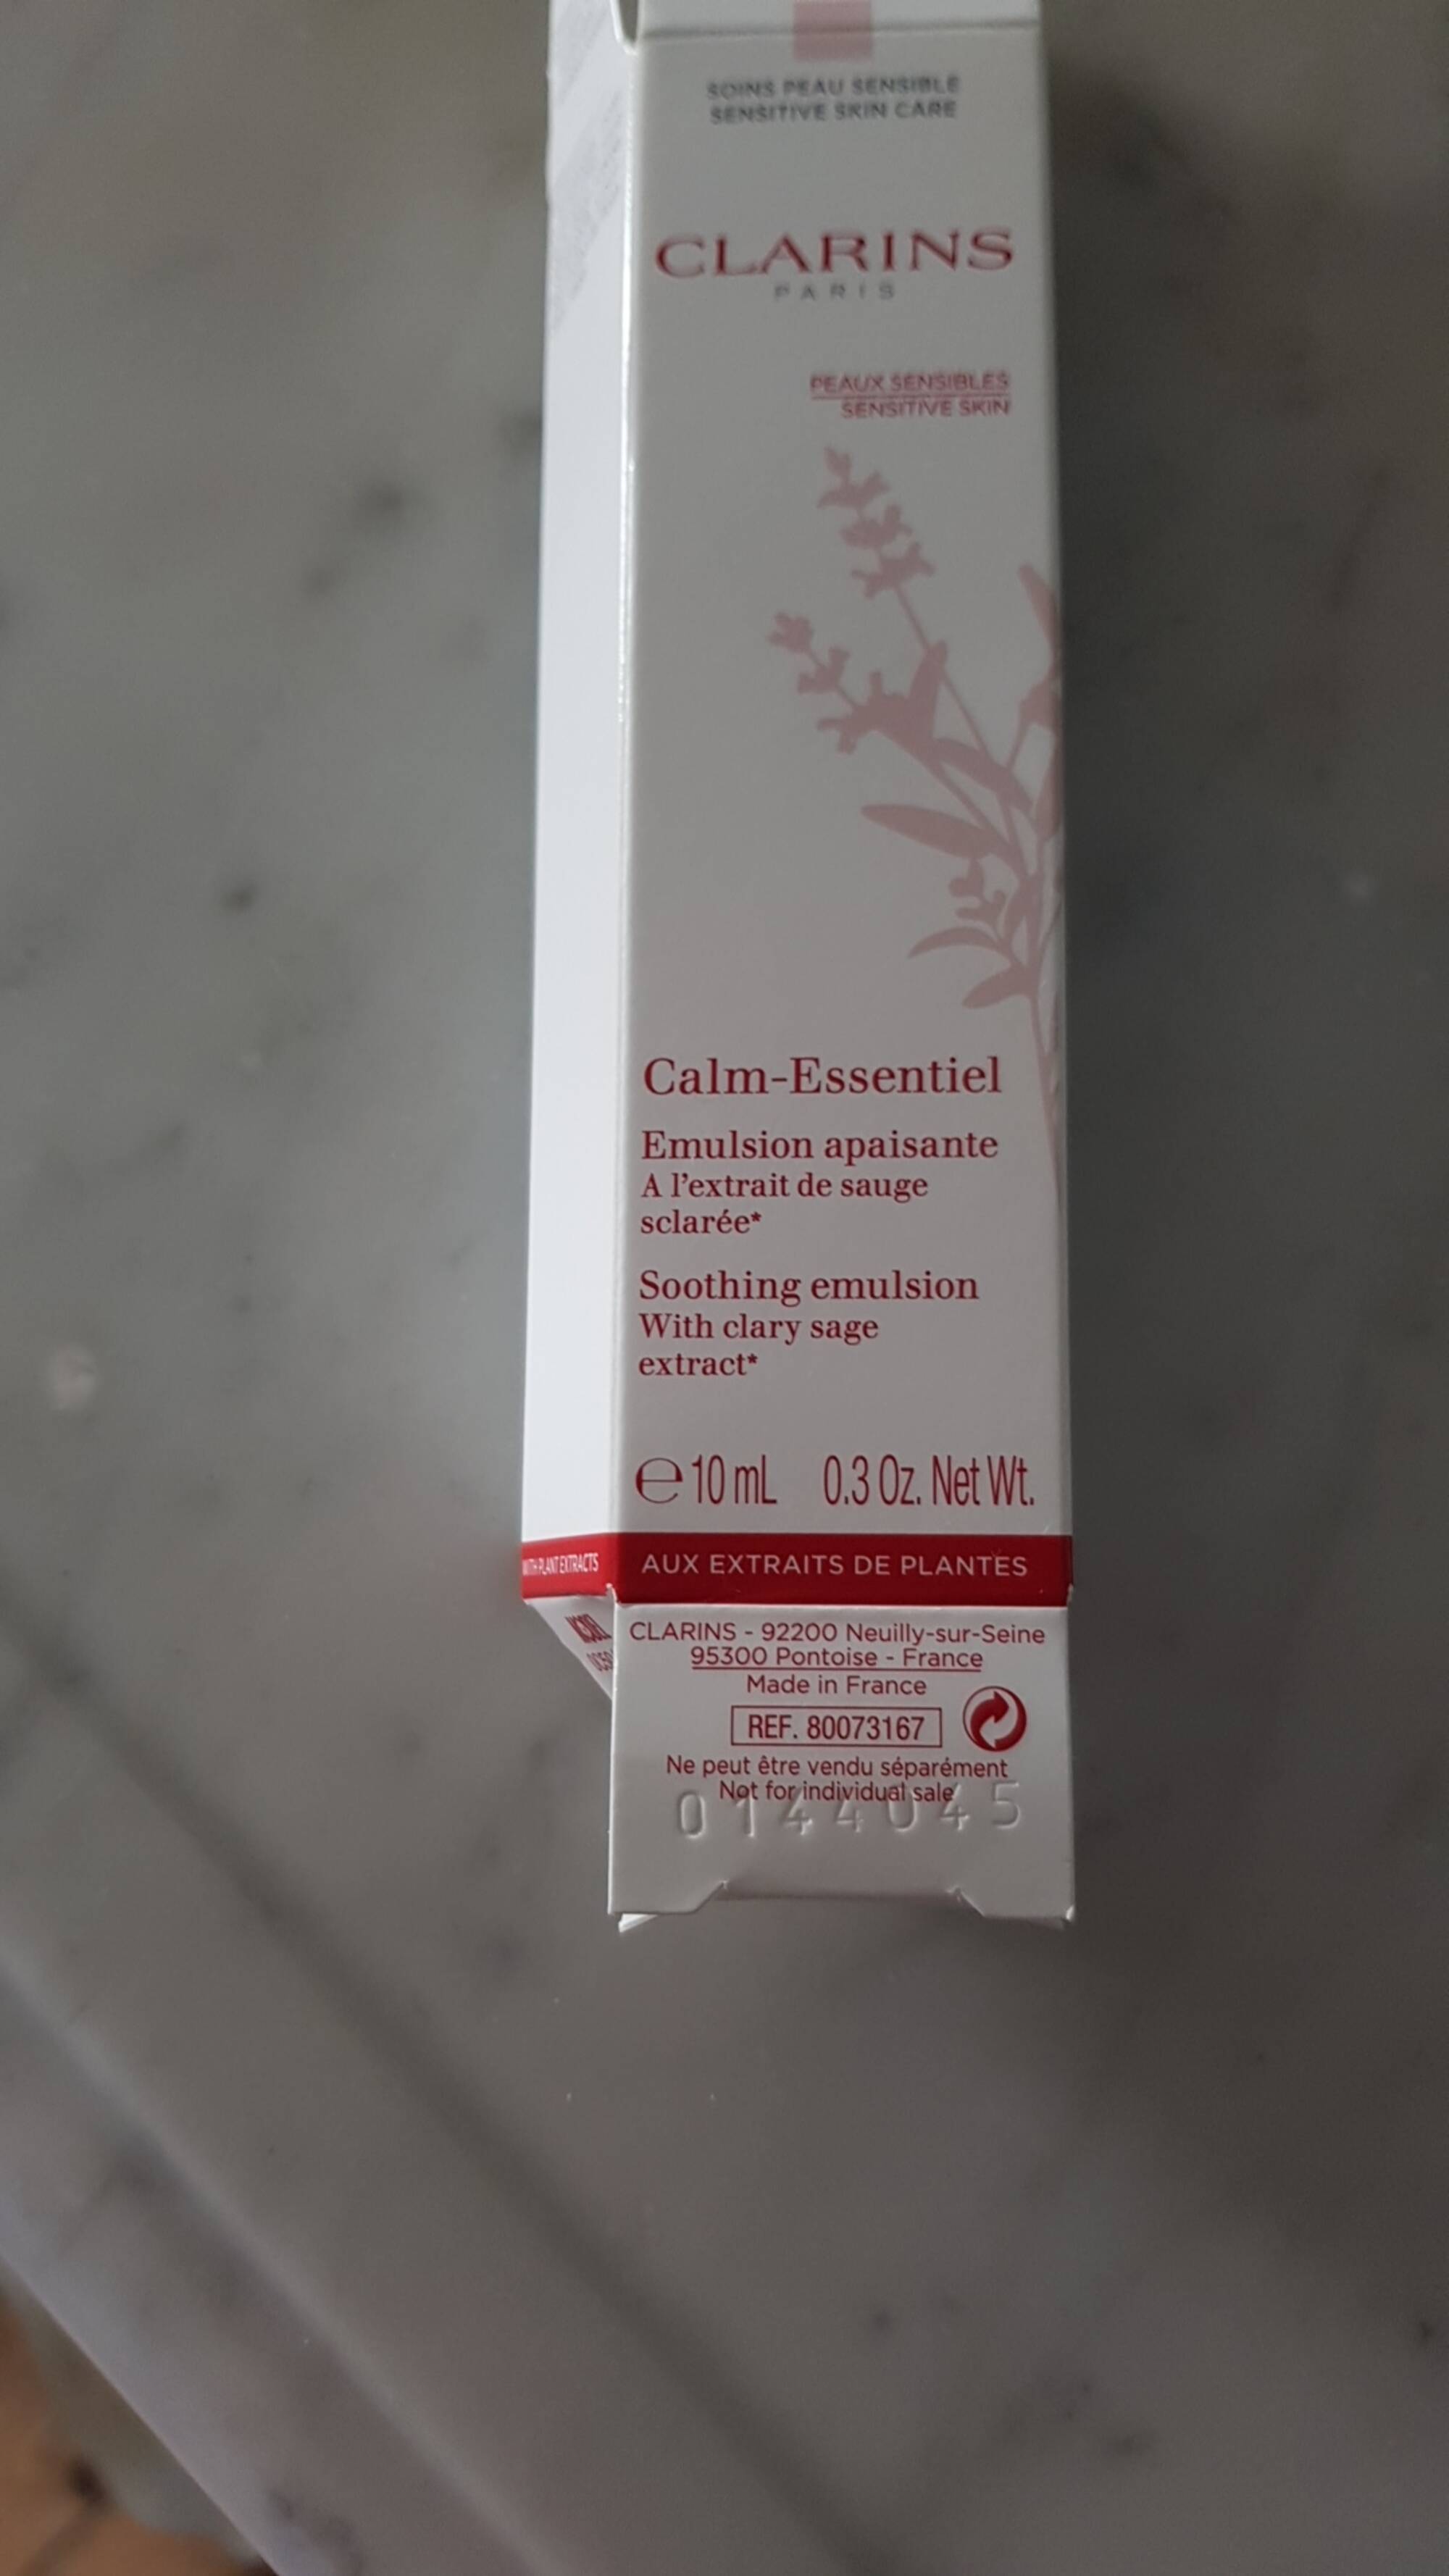 CLARINS - Calm-essentiel - Emulsion apaisante